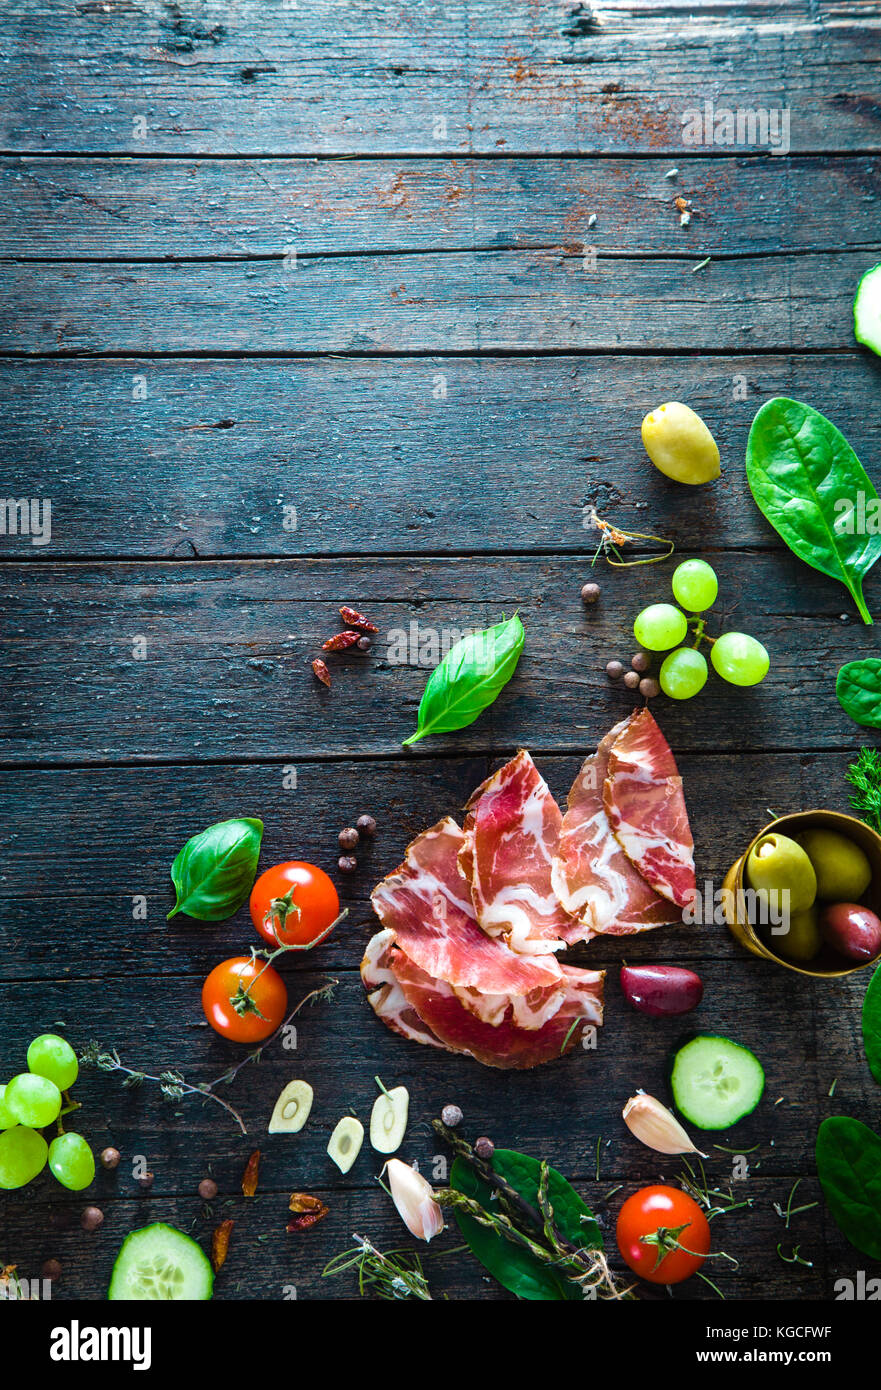 Italienischer Schinken, Prosciutto und Salami. Zutaten für Bruschette, Crostini oder Sandwich Bar. rustikale Blick von oben auf die Zutaten. Schinken mit Gemüse und spic Stockfoto